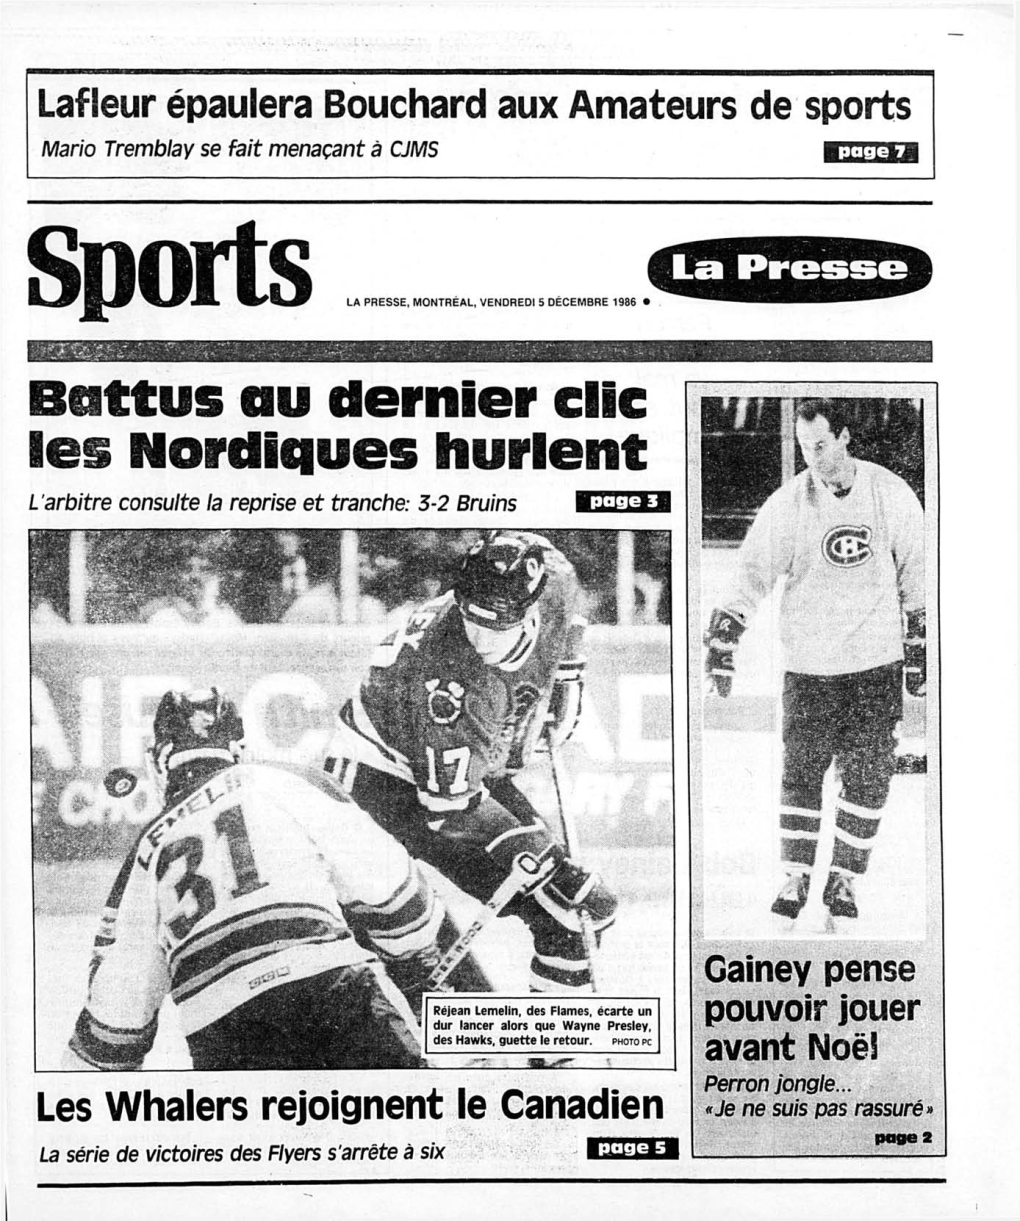 Battus Au Dernier Clic Les Nordiques Hurlent L Arbitre Consuite La Reprise Et Tranche: 3-2 Bruins Page 3